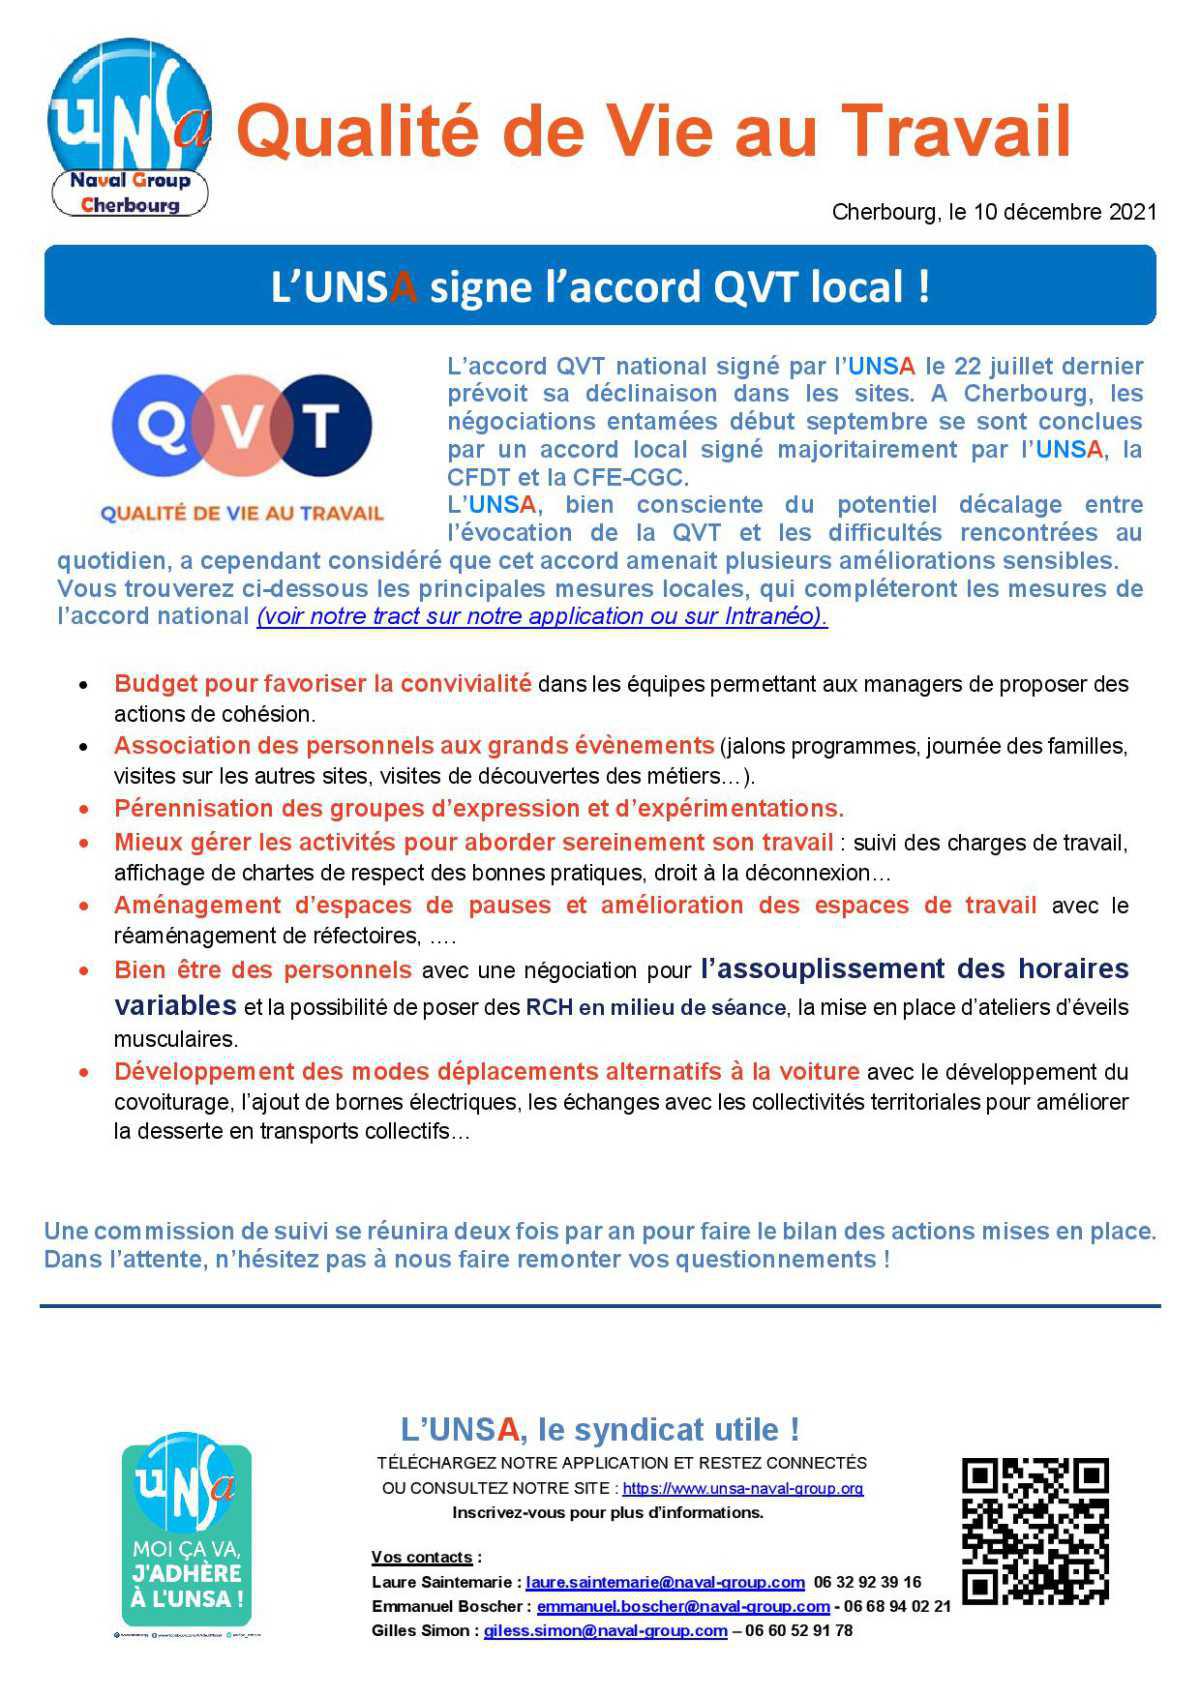 Qualité de Vie au Travail - L’UNSA Cherbourg signe l’accord QVT local !